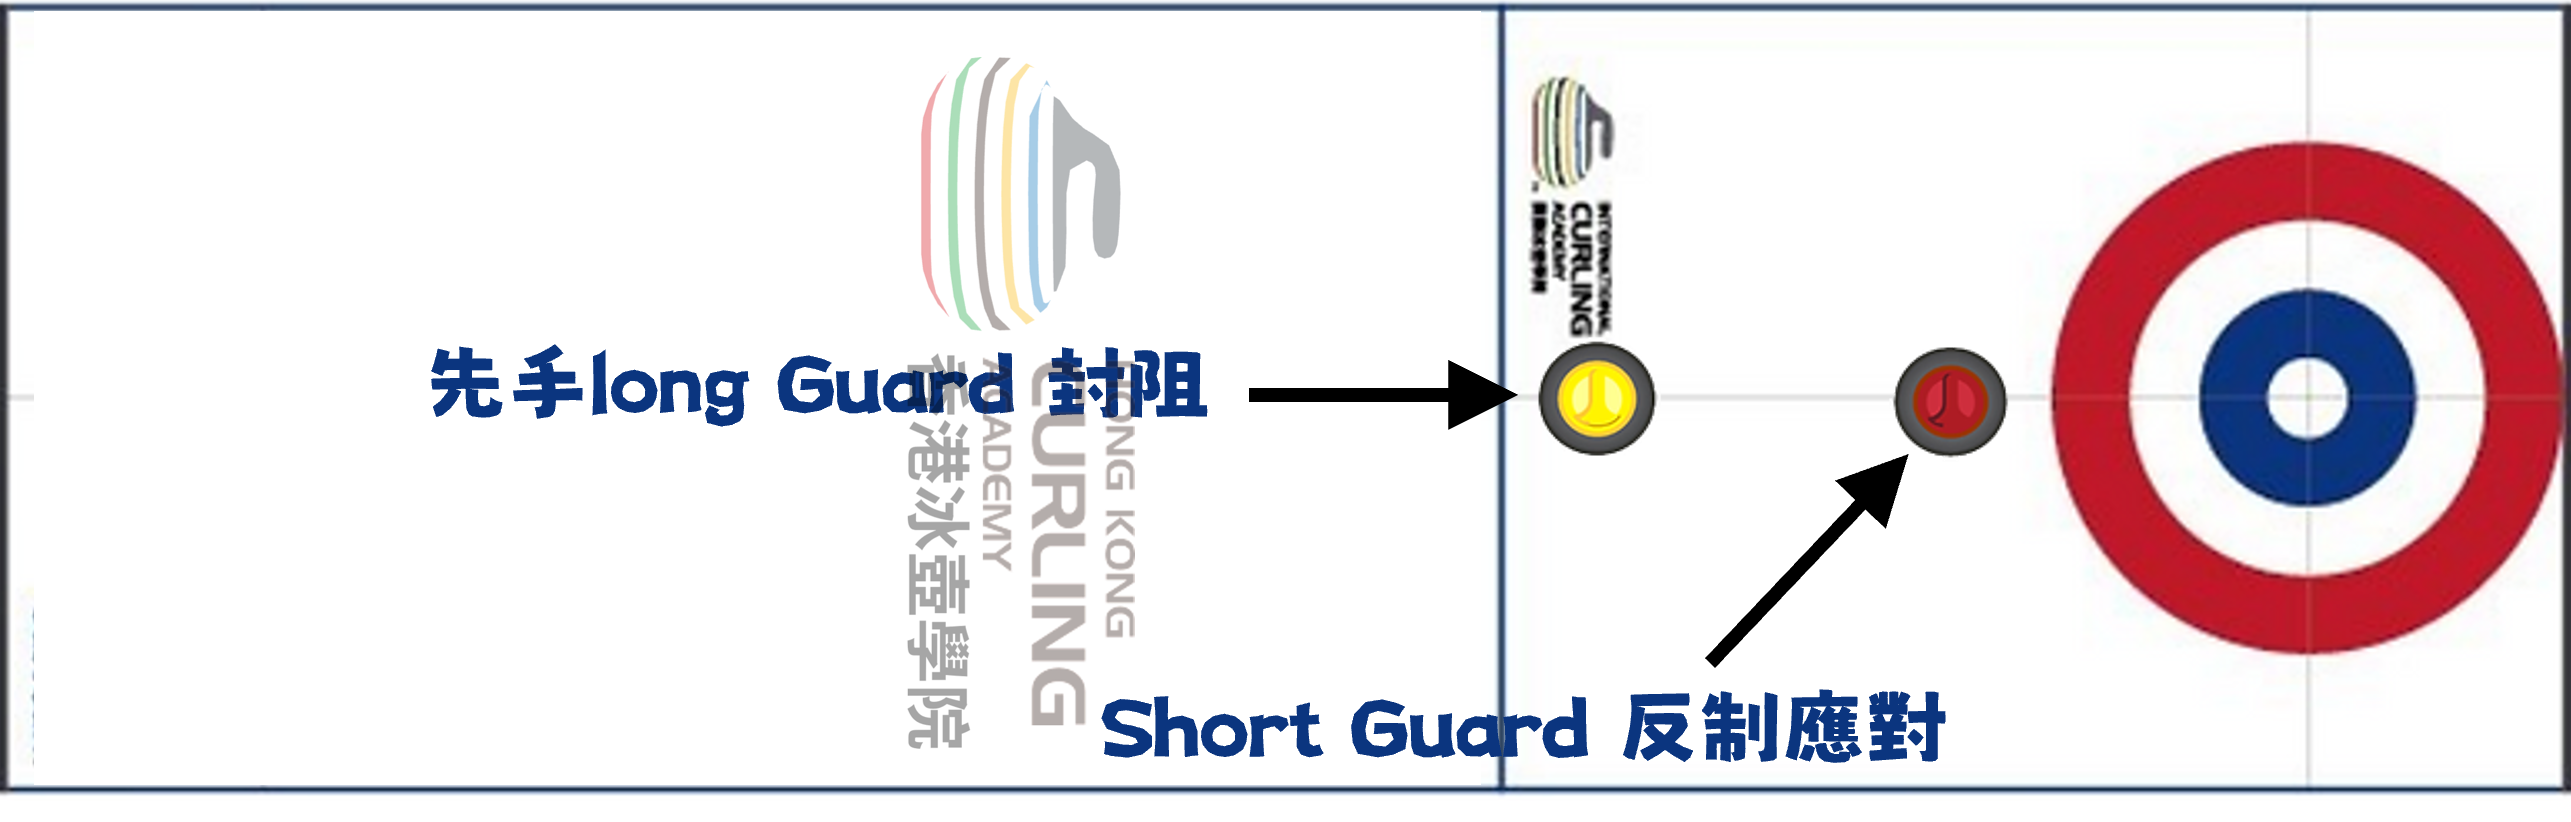 Long Guard Short Guard